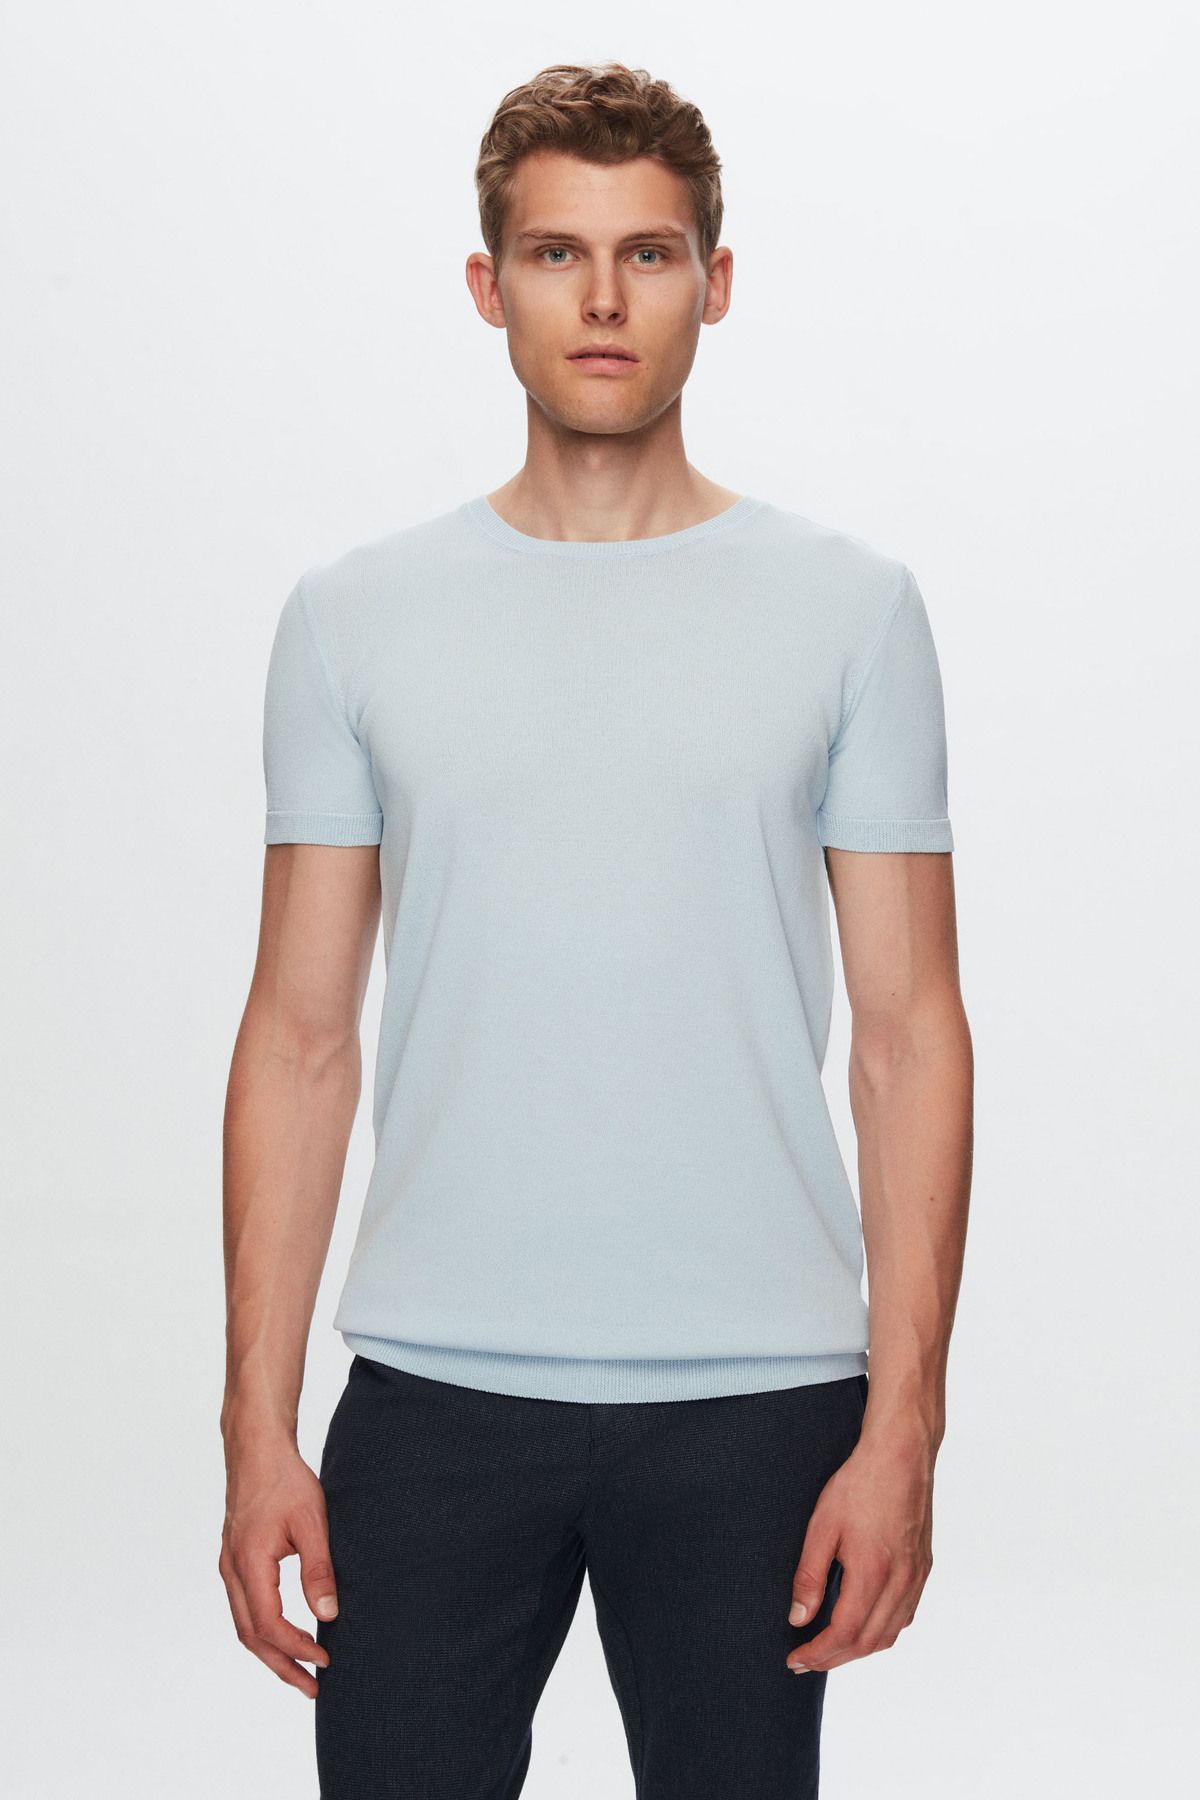 TWN Slim Fit Mavi Düz Örgü Rayon Örme T-shirt